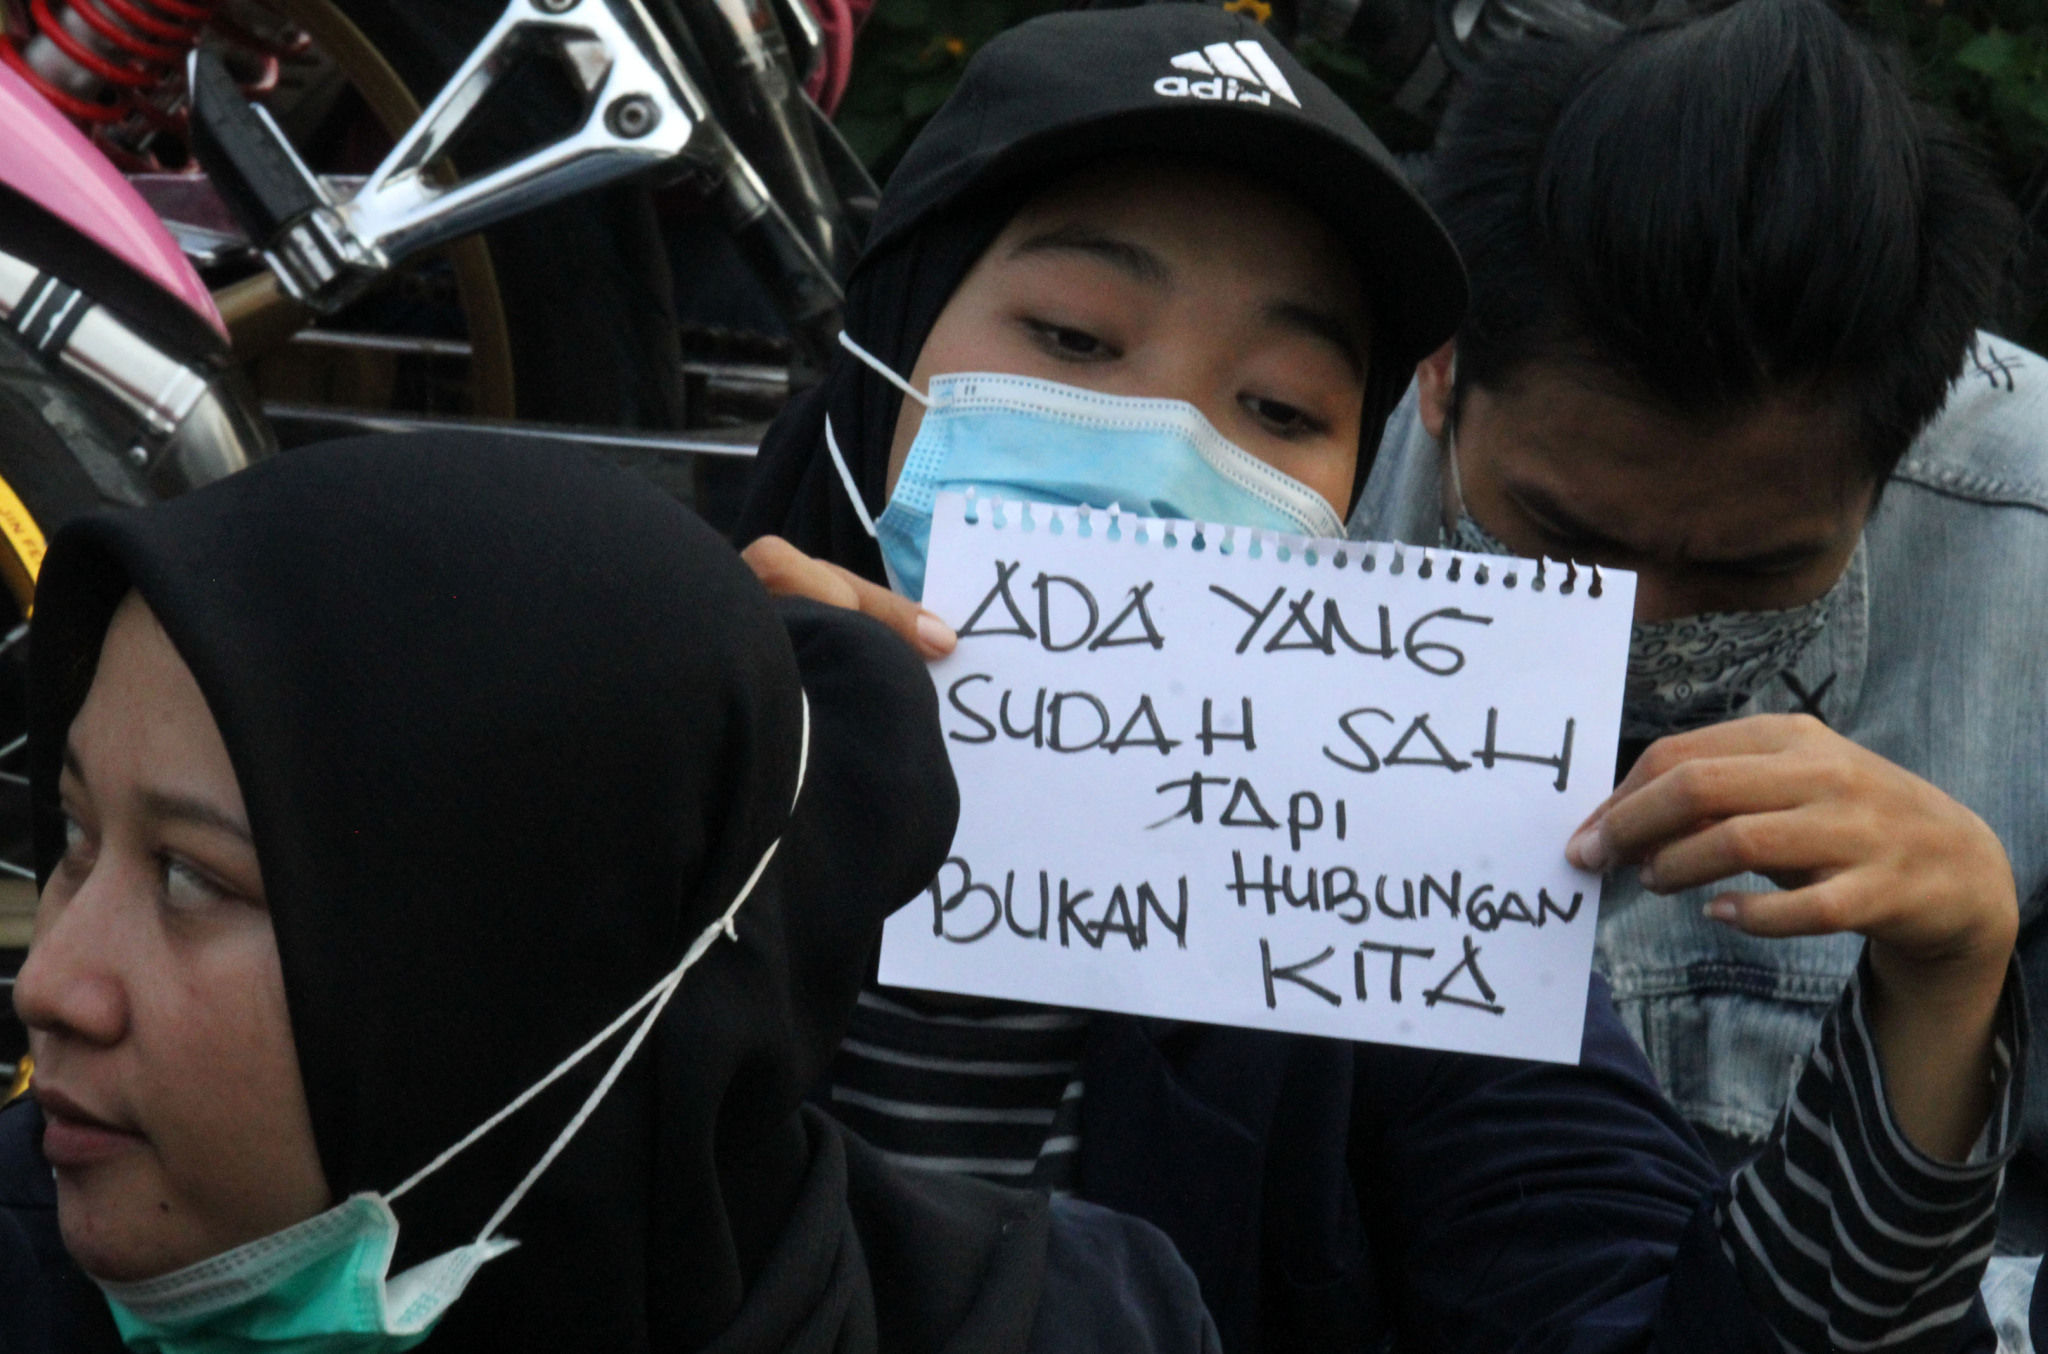 <p>Sejumlah mahasiswa melakukan demonstrasi di Tugu Adipura, Kota Tangerang, Banten, Rabu, 7 Oktober 2020. Aksi tersebut sebagai penolakan atas pengesahan Undang-Undang Cipta Kerja oleh DPR. Foto: Panji Asmoro/TrenAsia</p>
